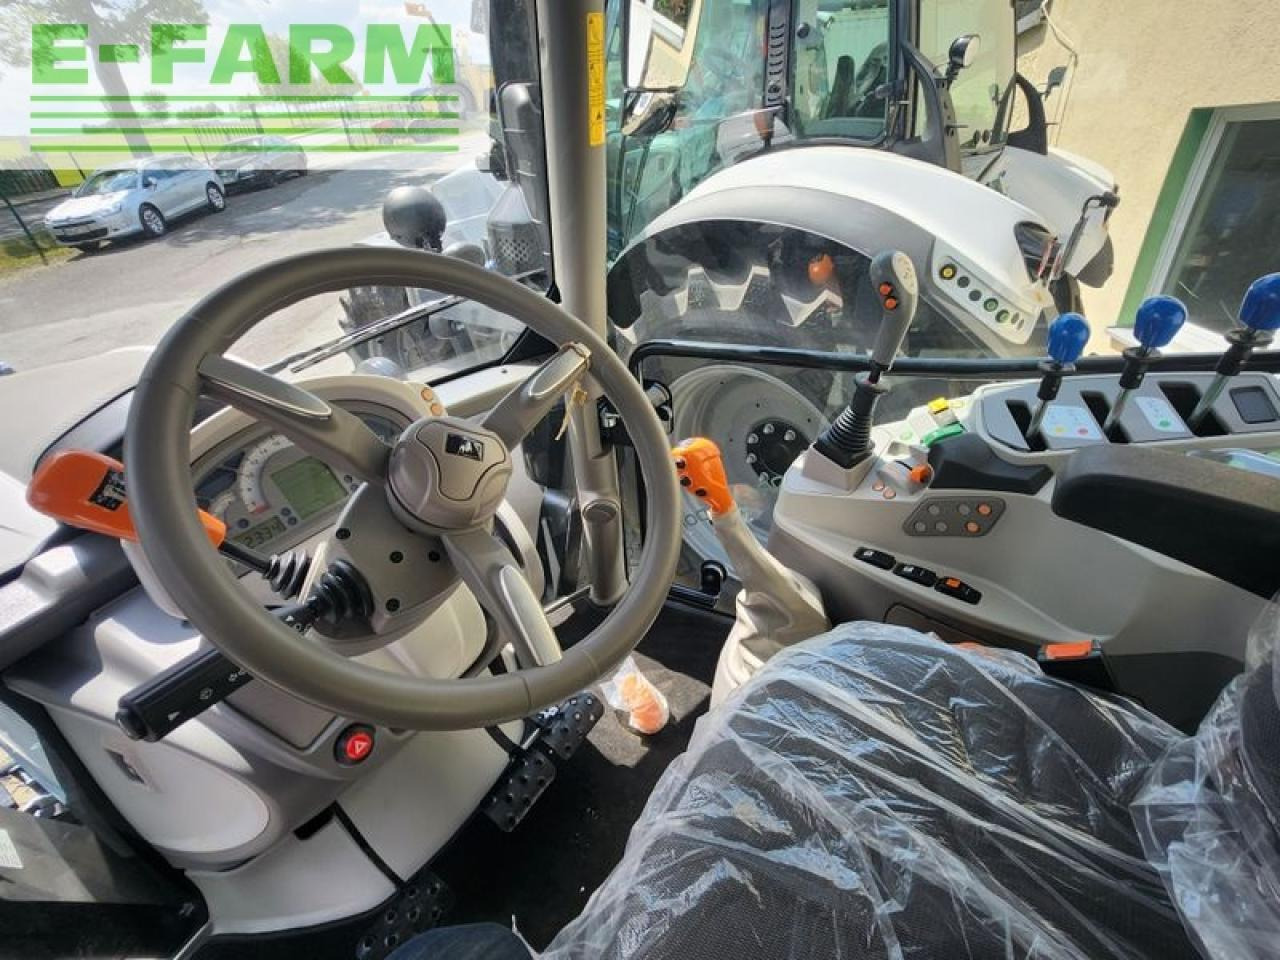 Farm tractor Lamborghini spark 125: picture 6